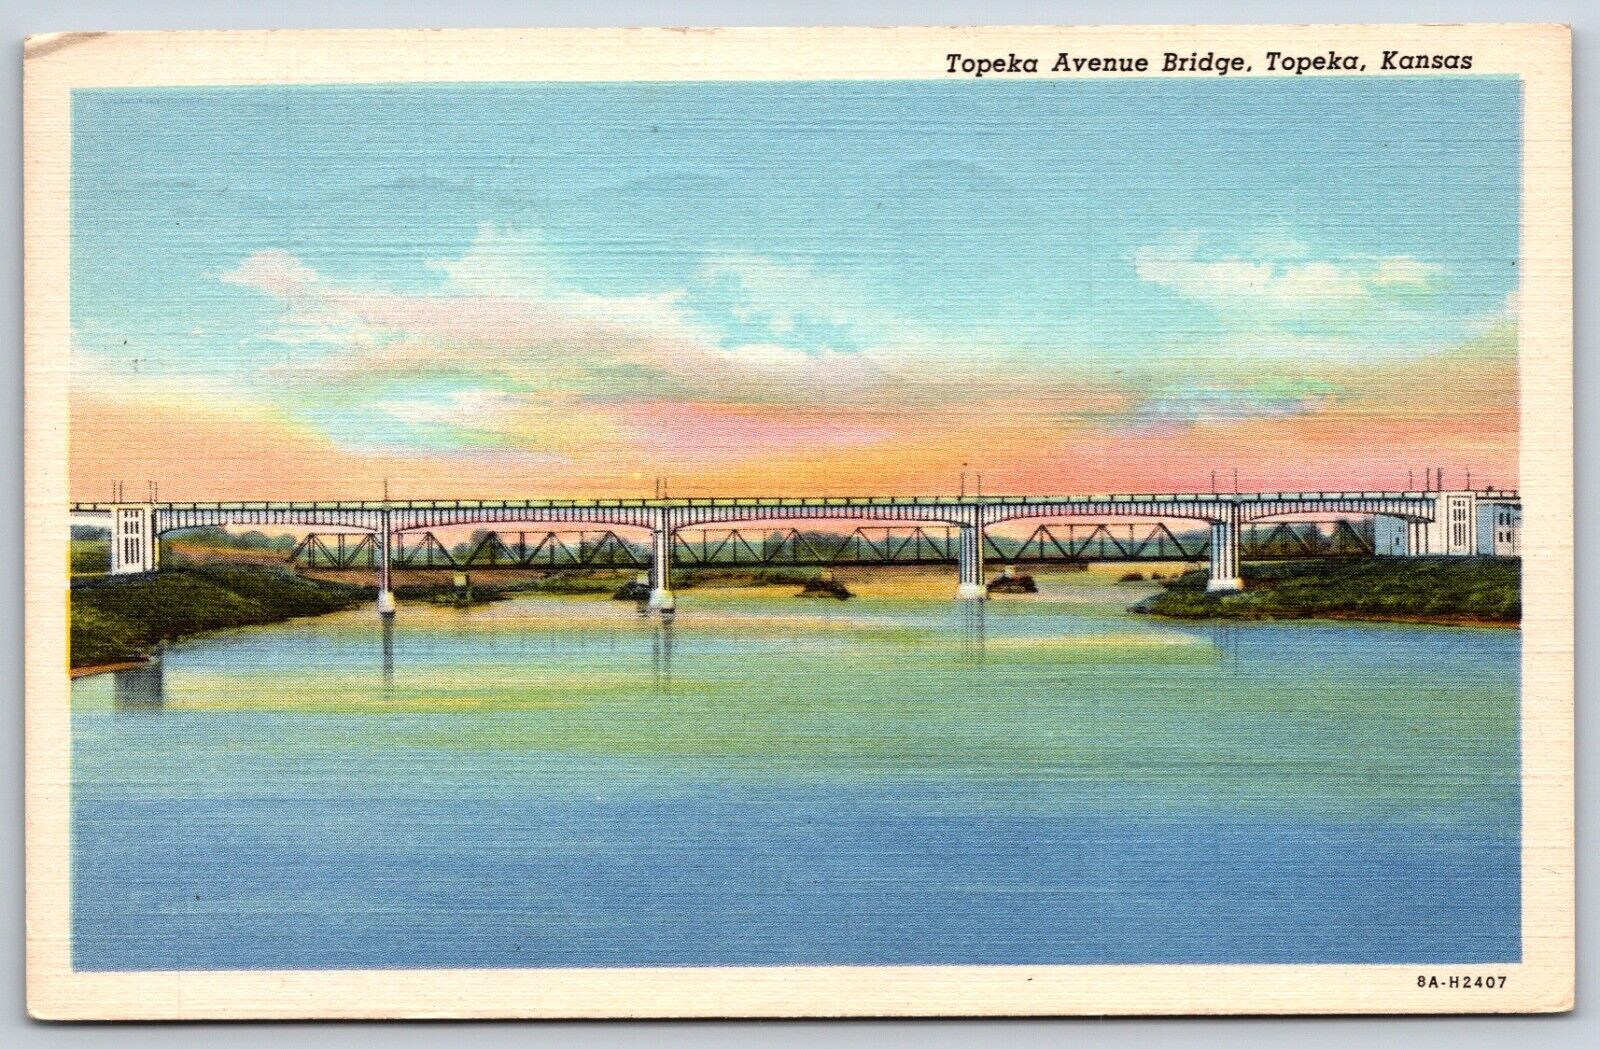 Postcard The Topeka Avenue Bridge Spans The Kansas River, Topeka KS Posted 1947